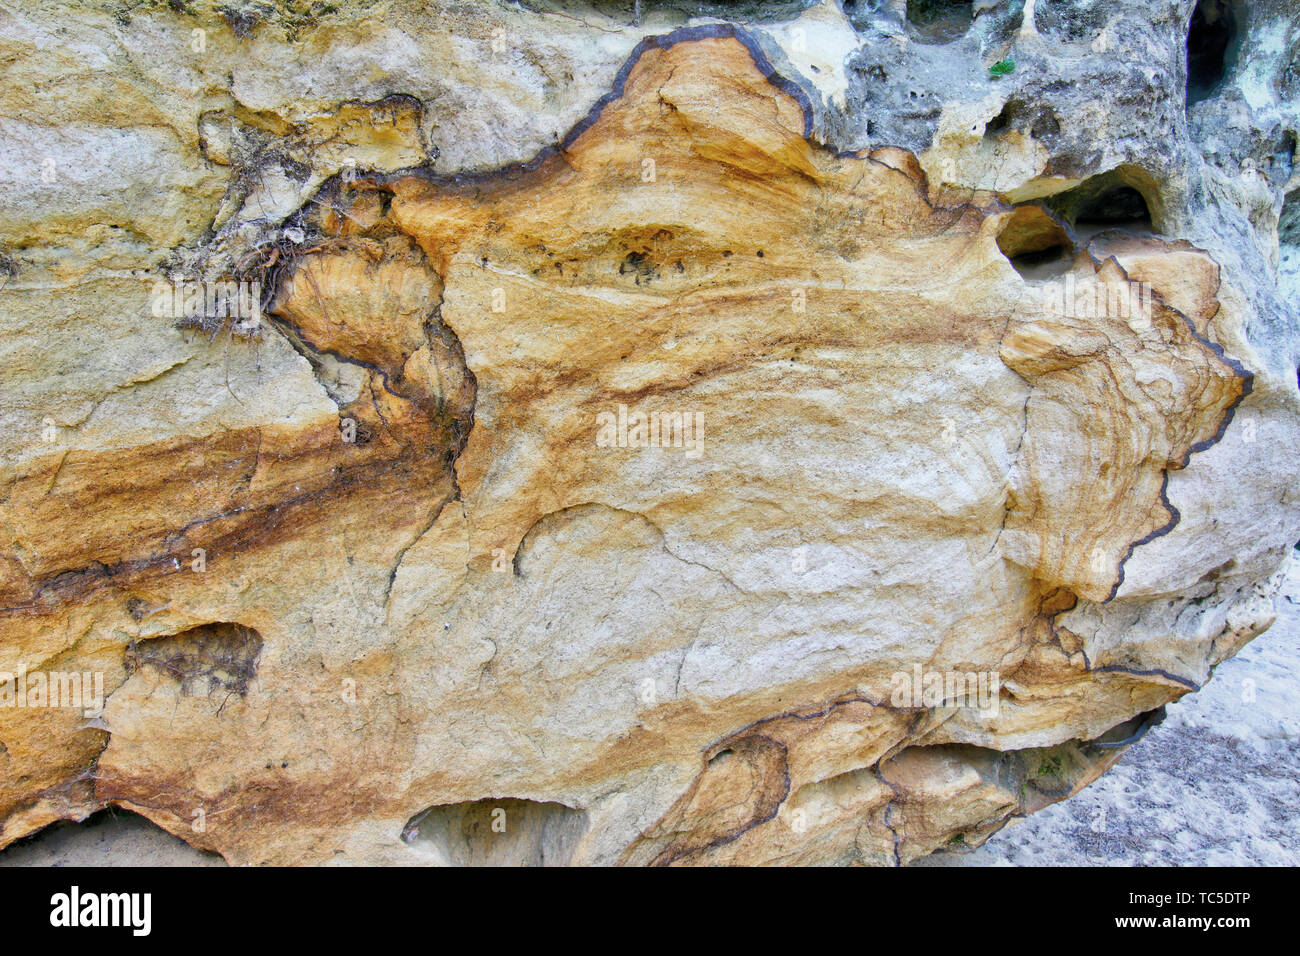 Formation géologique bizarre - journal de fer dans les roches de grès - bog le minerai de fer l'entartrage Banque D'Images